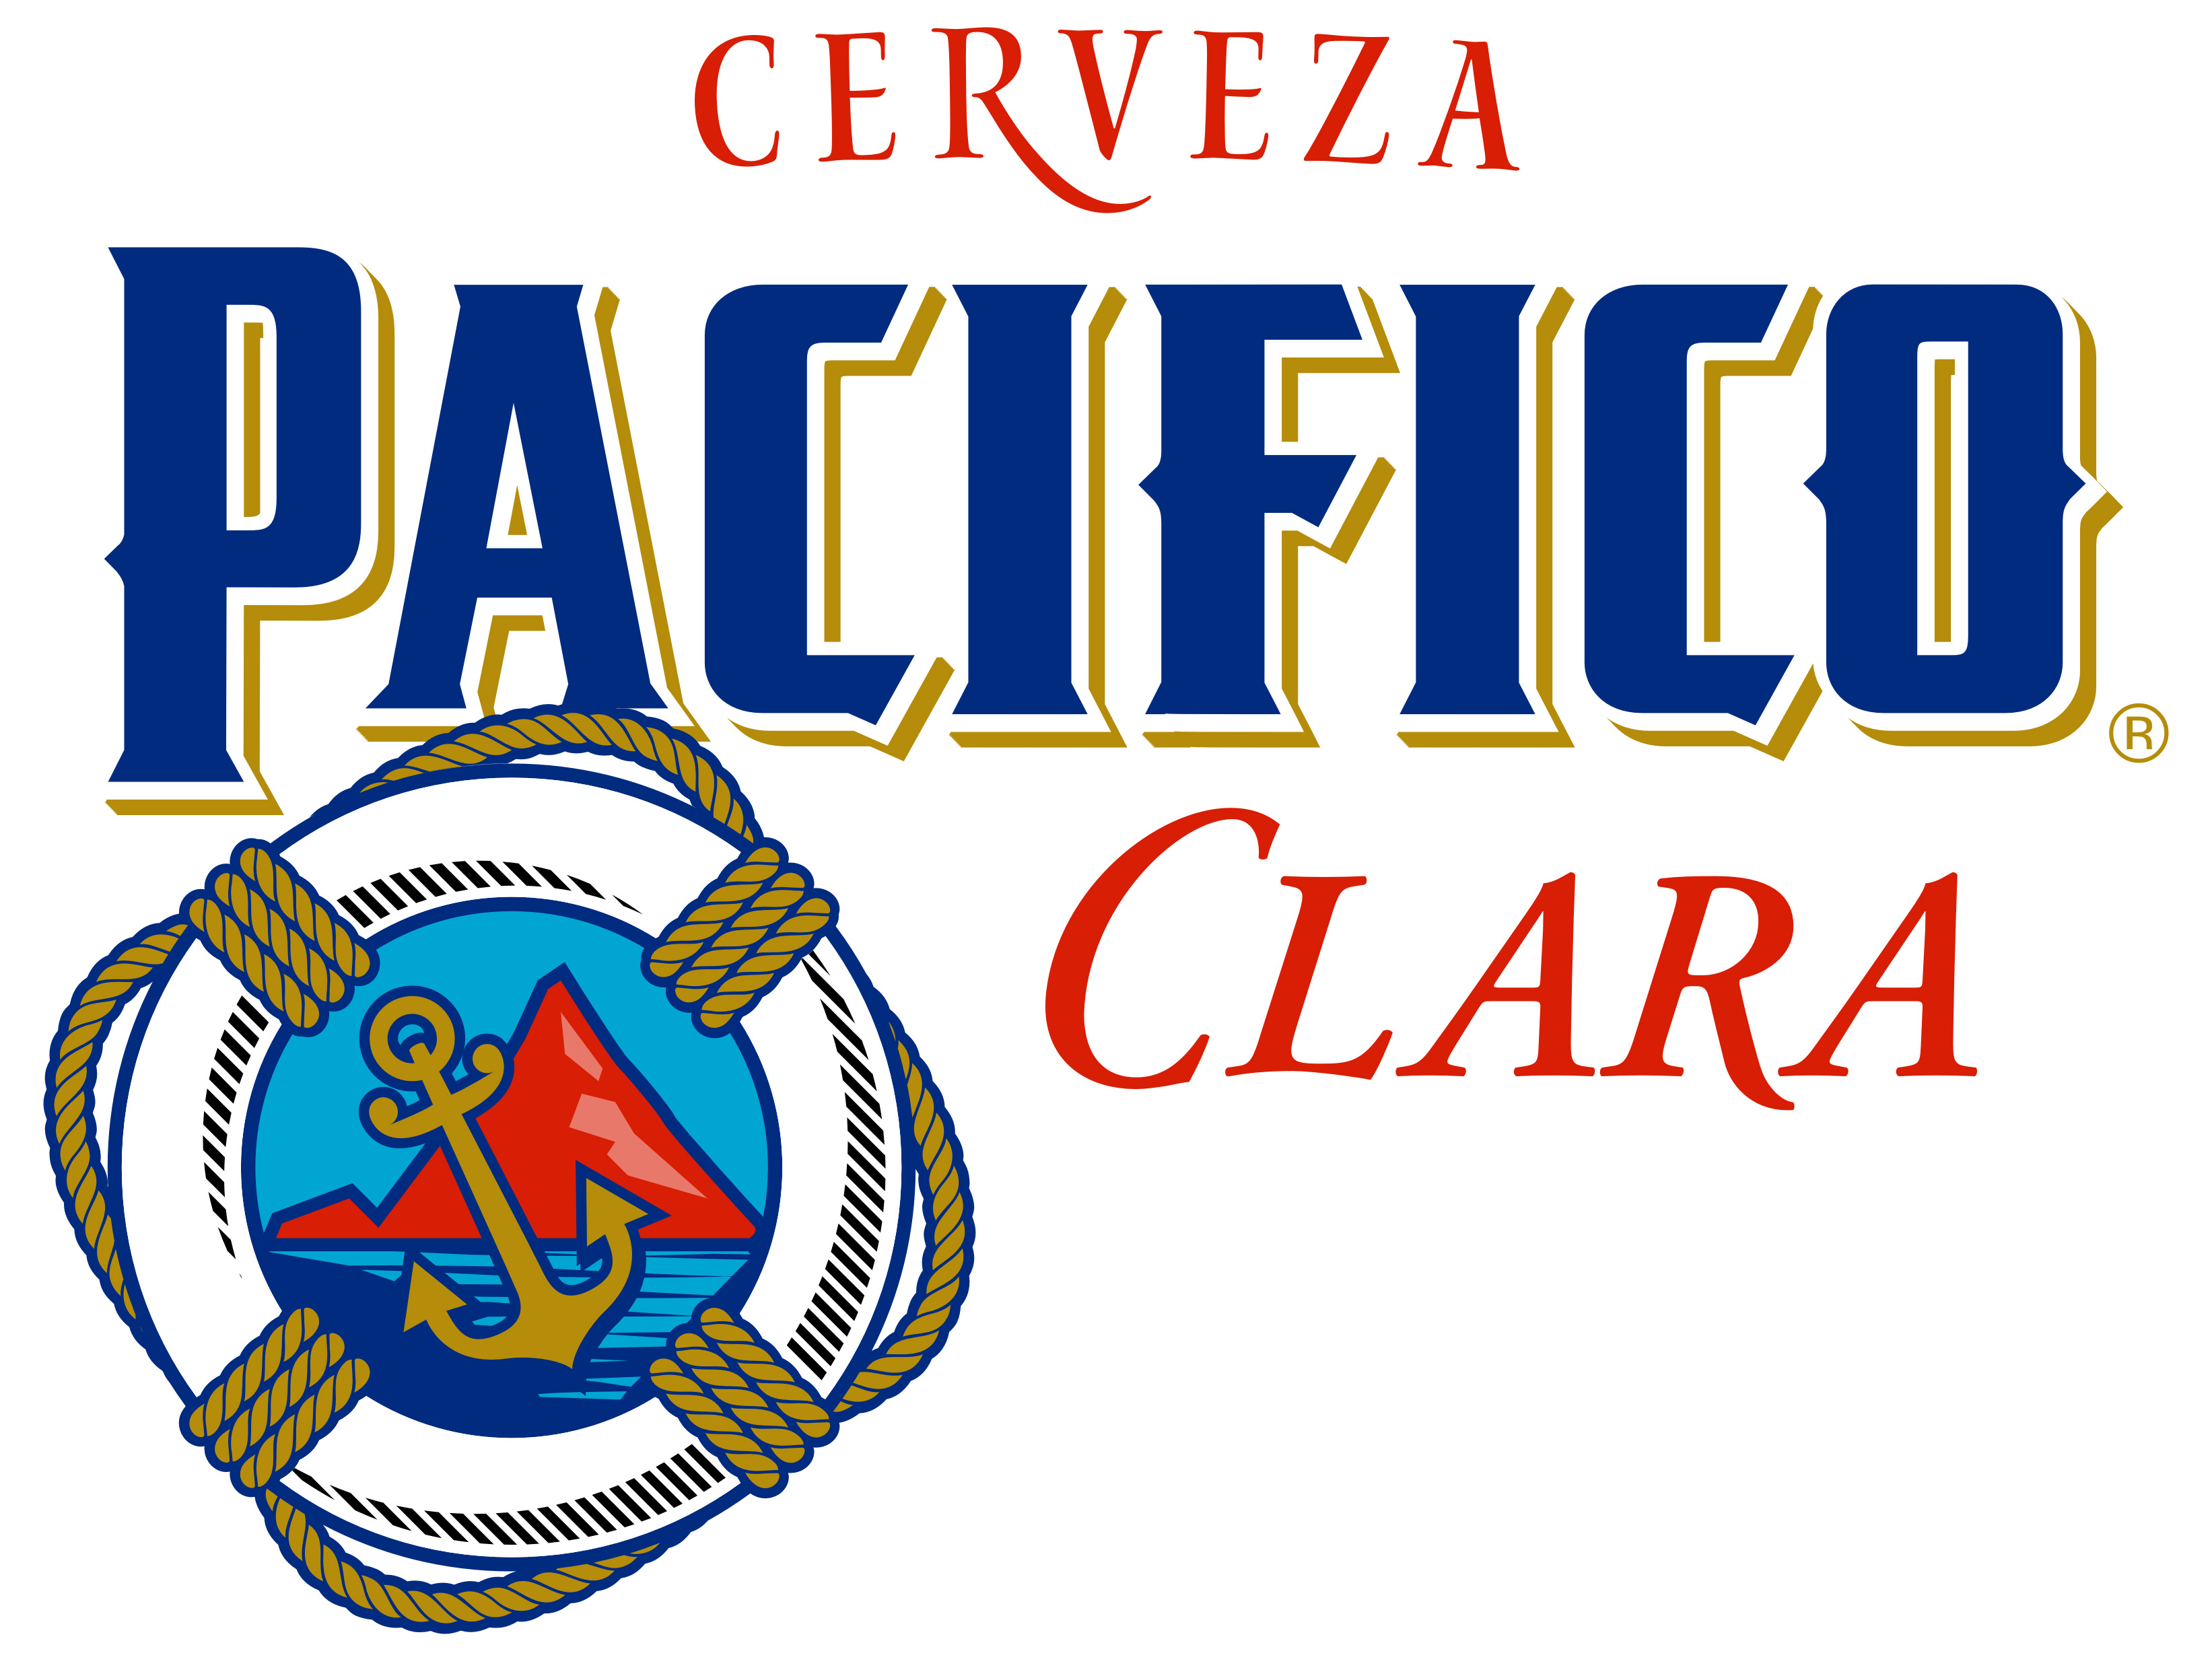 Pacifico beer  Logos 